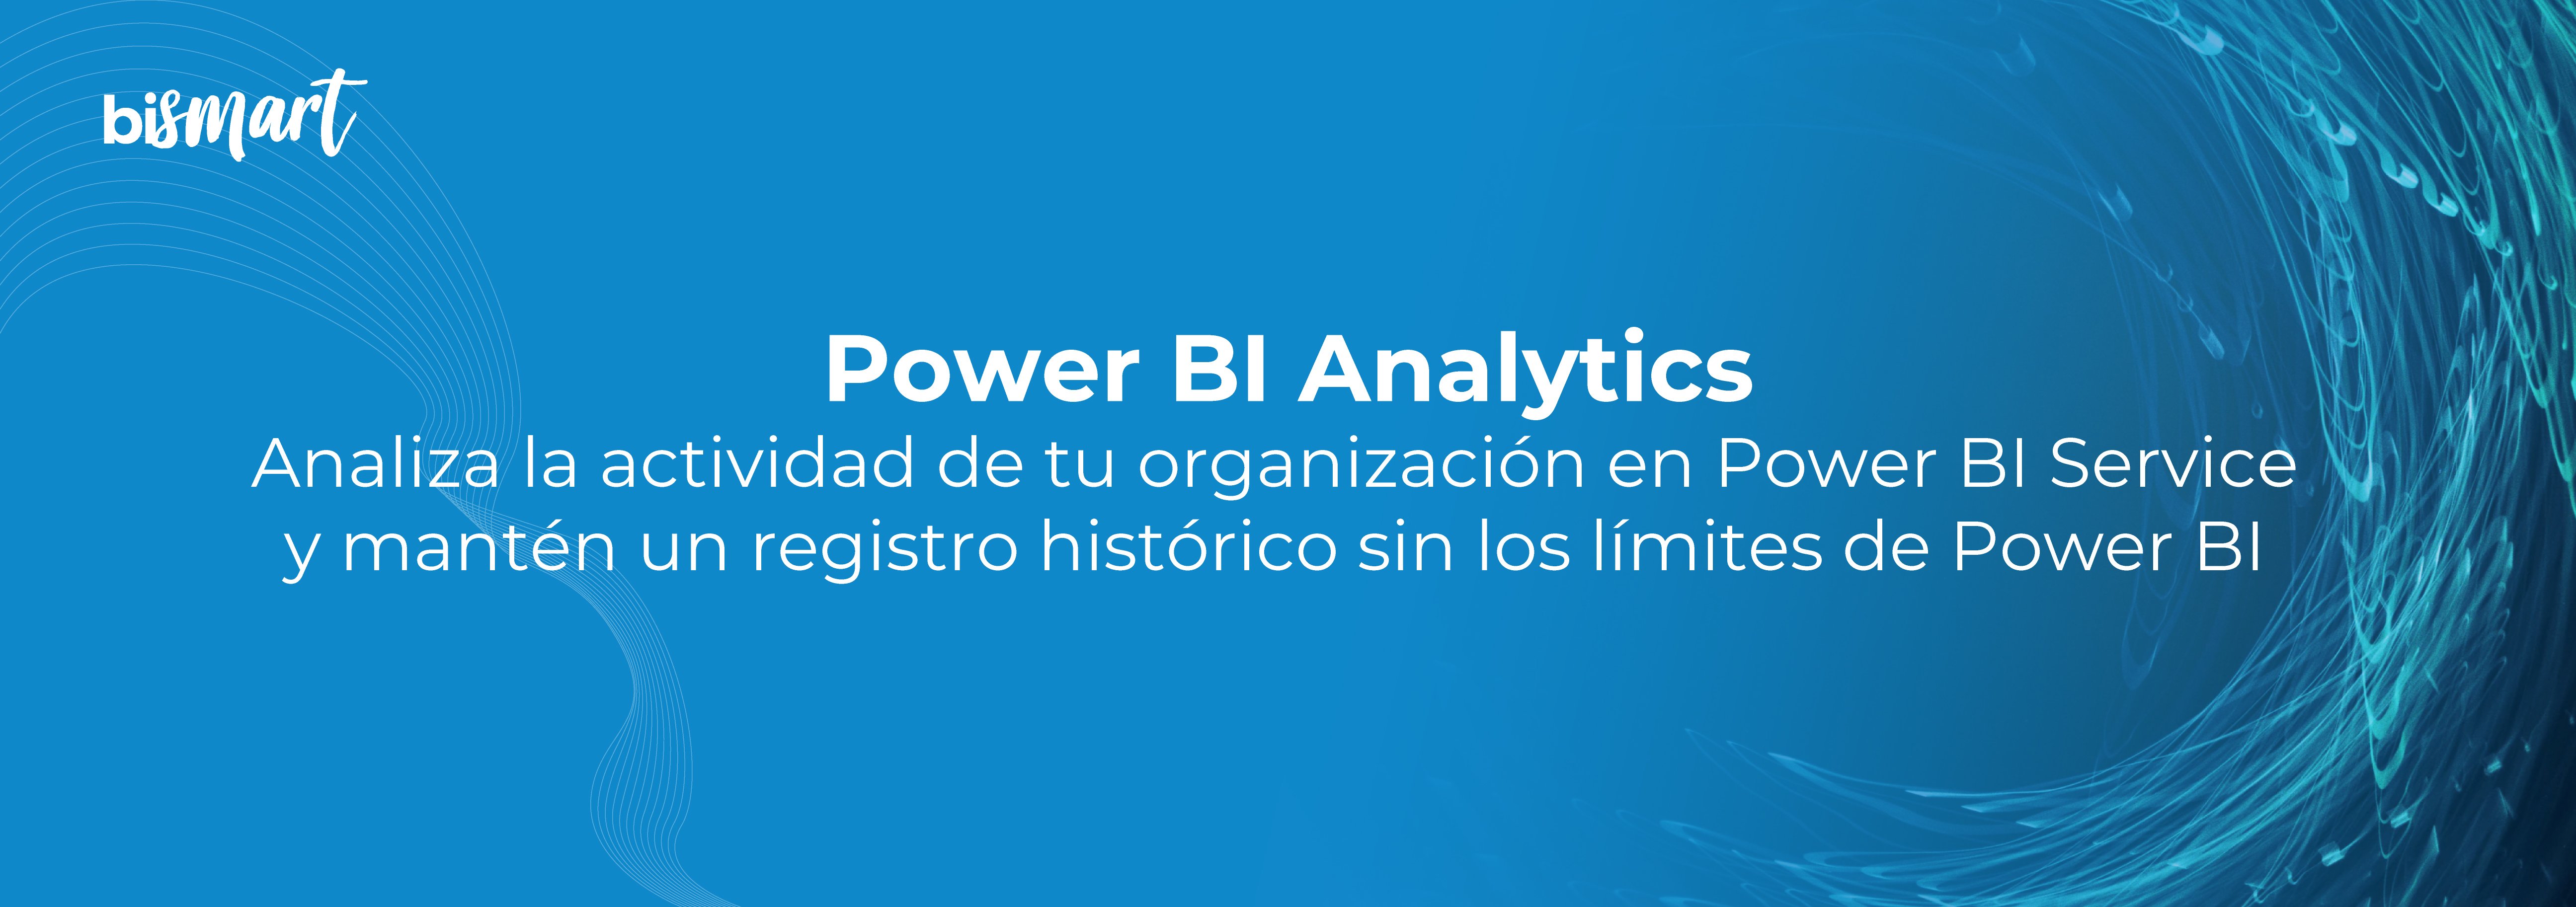 PowerBI-Analytics-01-1